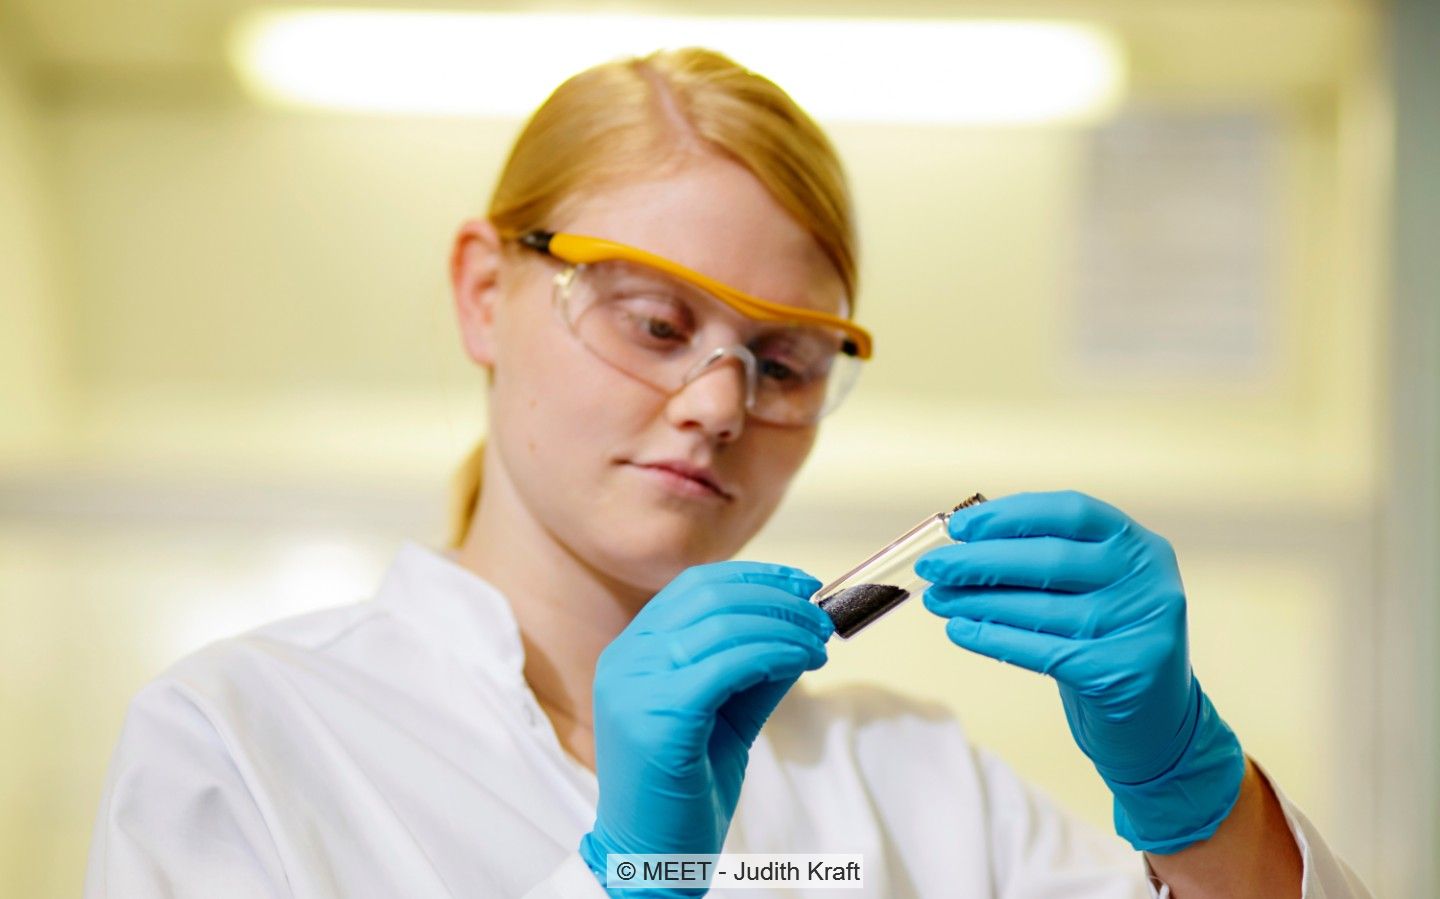 Eine Forscherin im weißen Kittel und mit handschuhen hält ein Reagenzglas in der Hand.